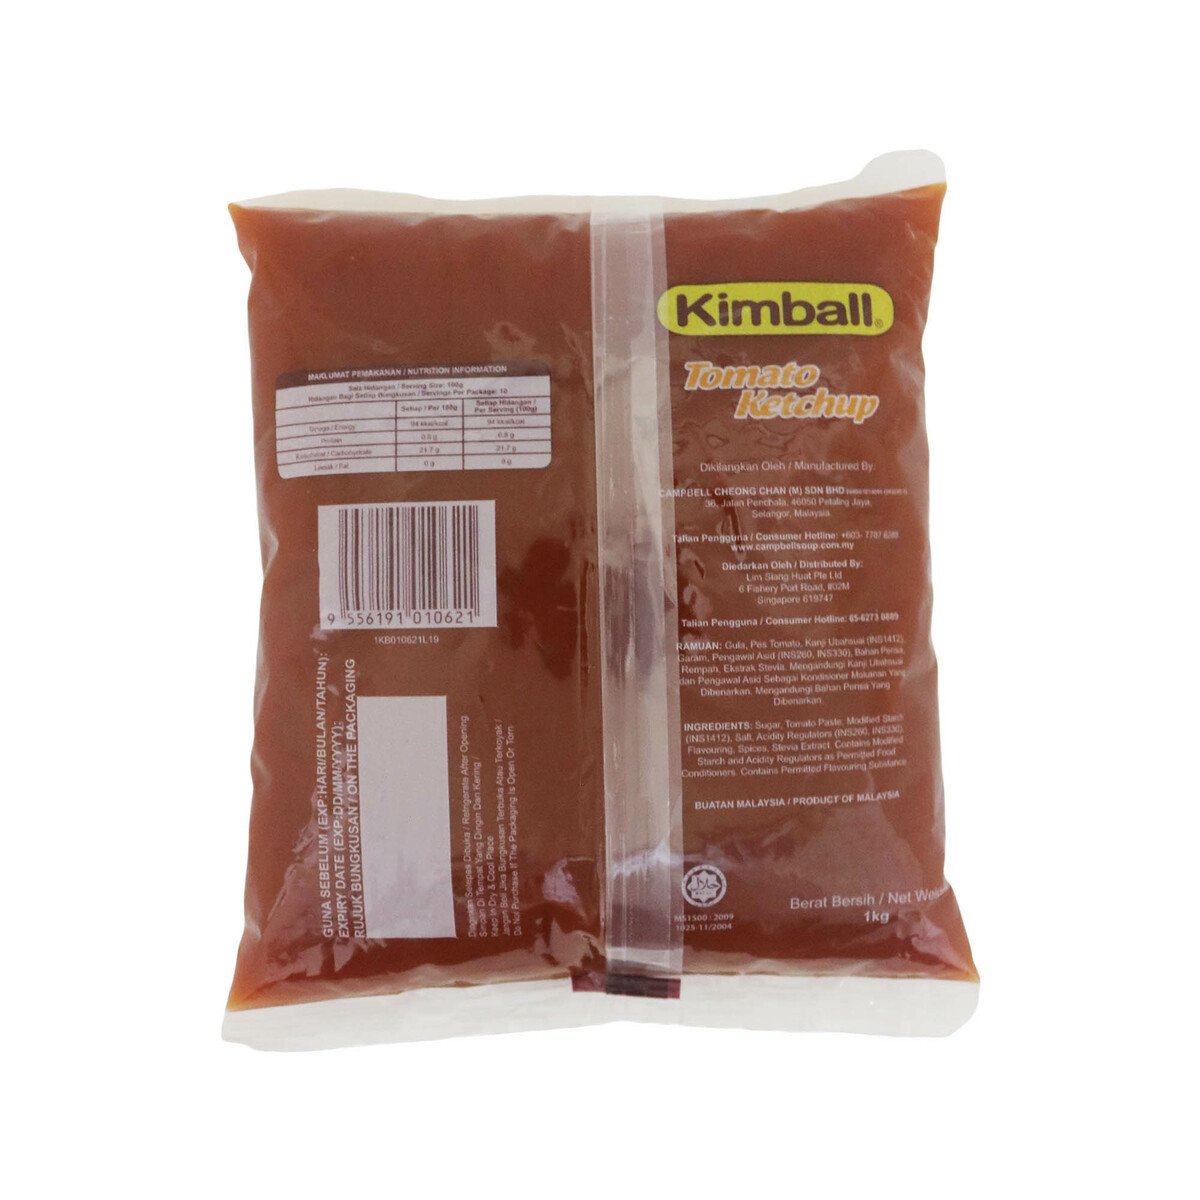 Kimball Tomato Ketchup 1kg